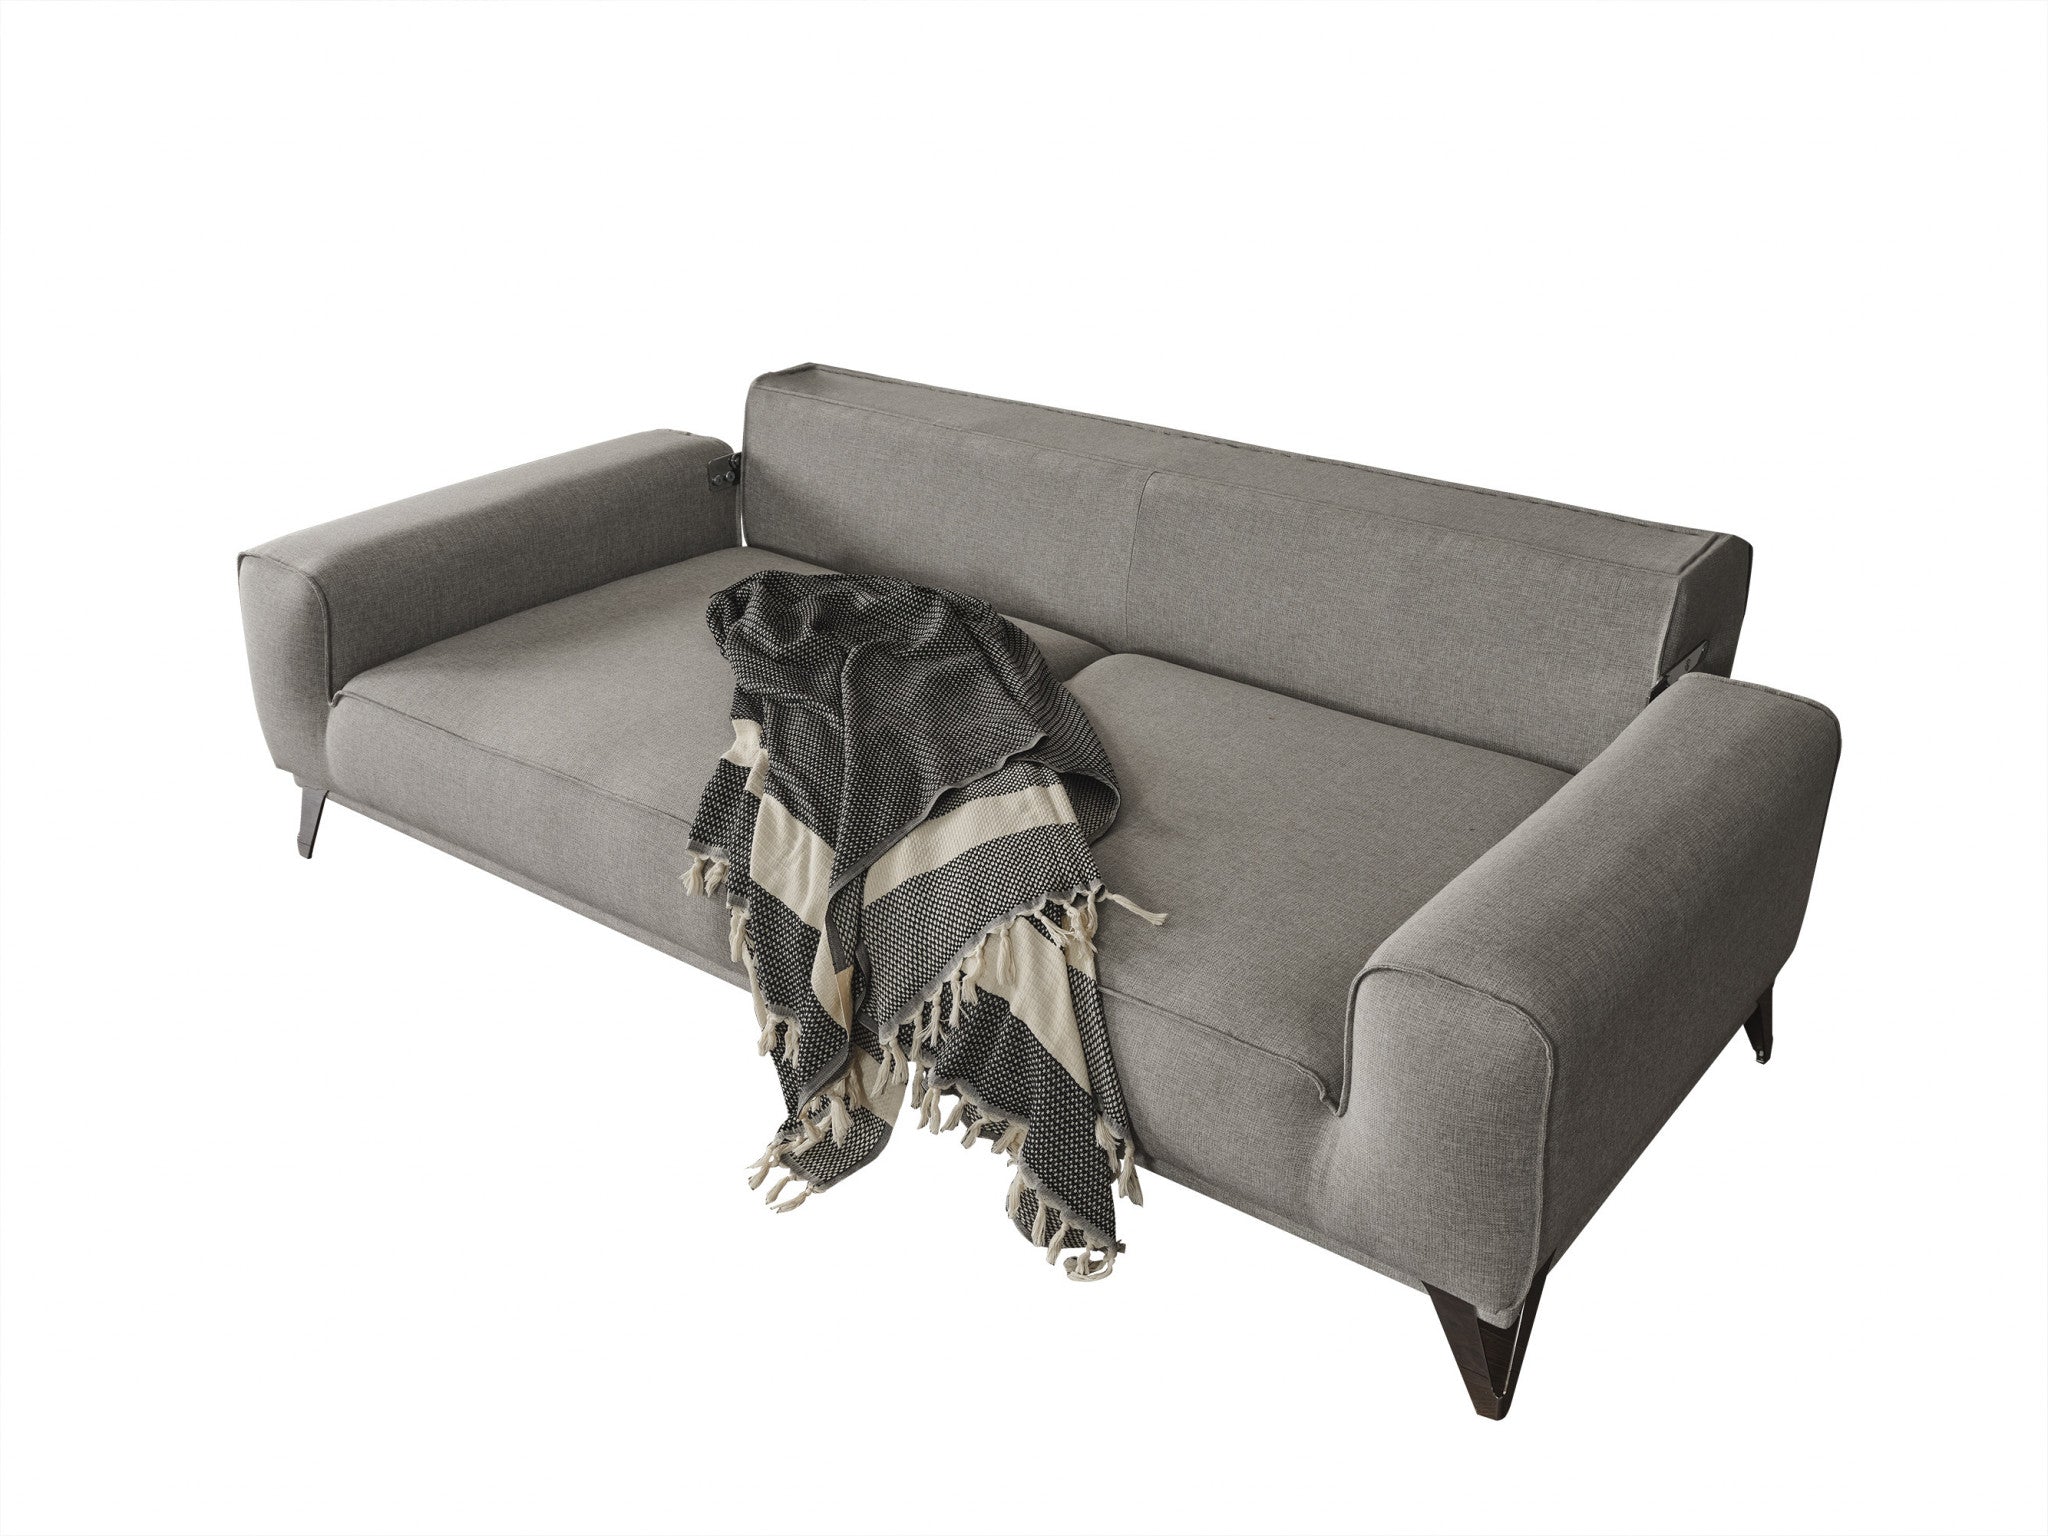 90" Linen And Silver Linen Sleeper Sleeper Sofa And Toss Pillows